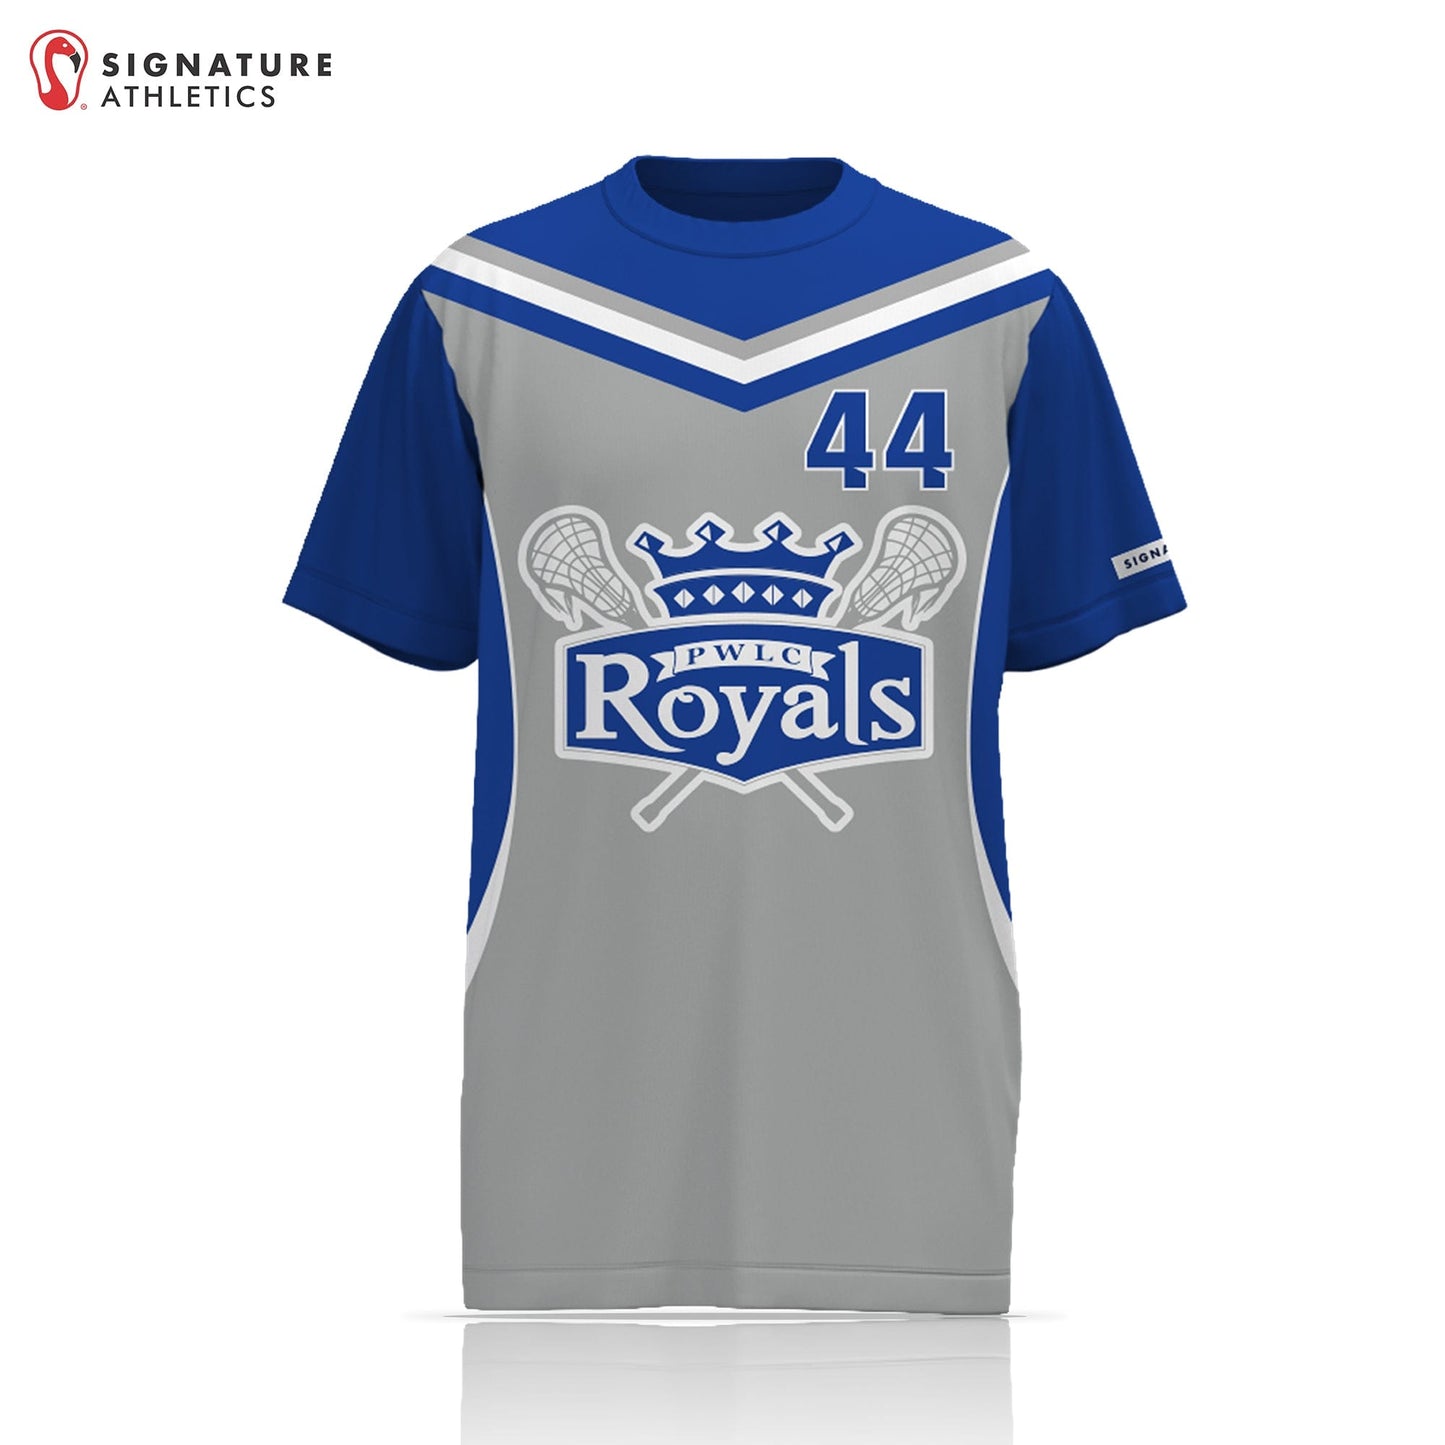 Prince William Lacrosse Club - Royals 2.0 Unisex Performance Short Sleeve Shooting Shirt - Basic 2.0:Girls 2027 Signature Lacrosse